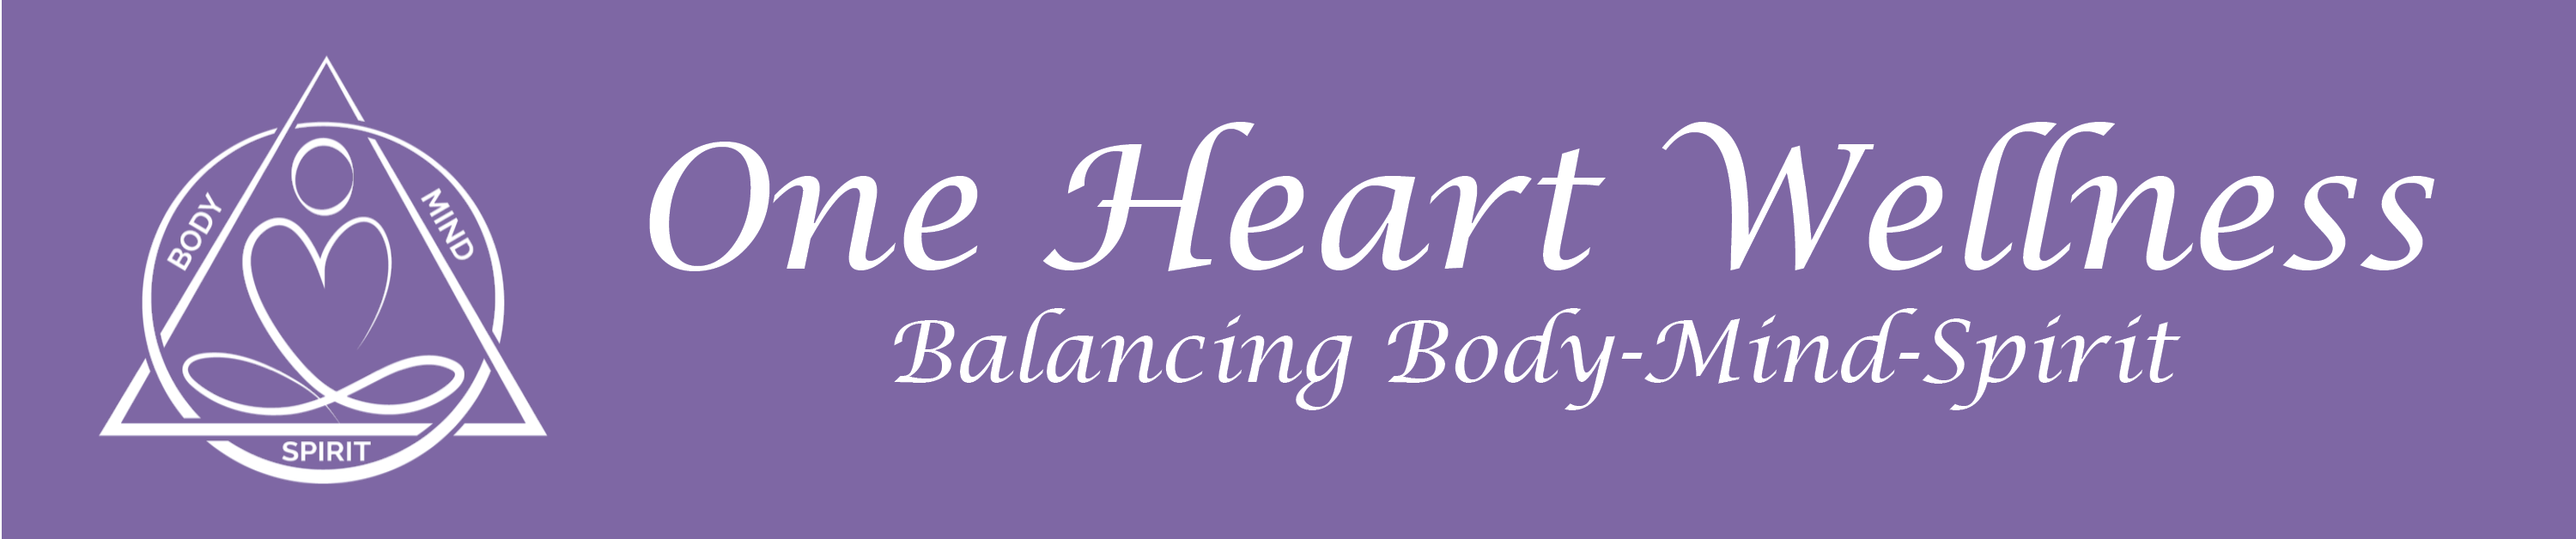 One Heart Wellness; Balancing Body-Mind-Spirit